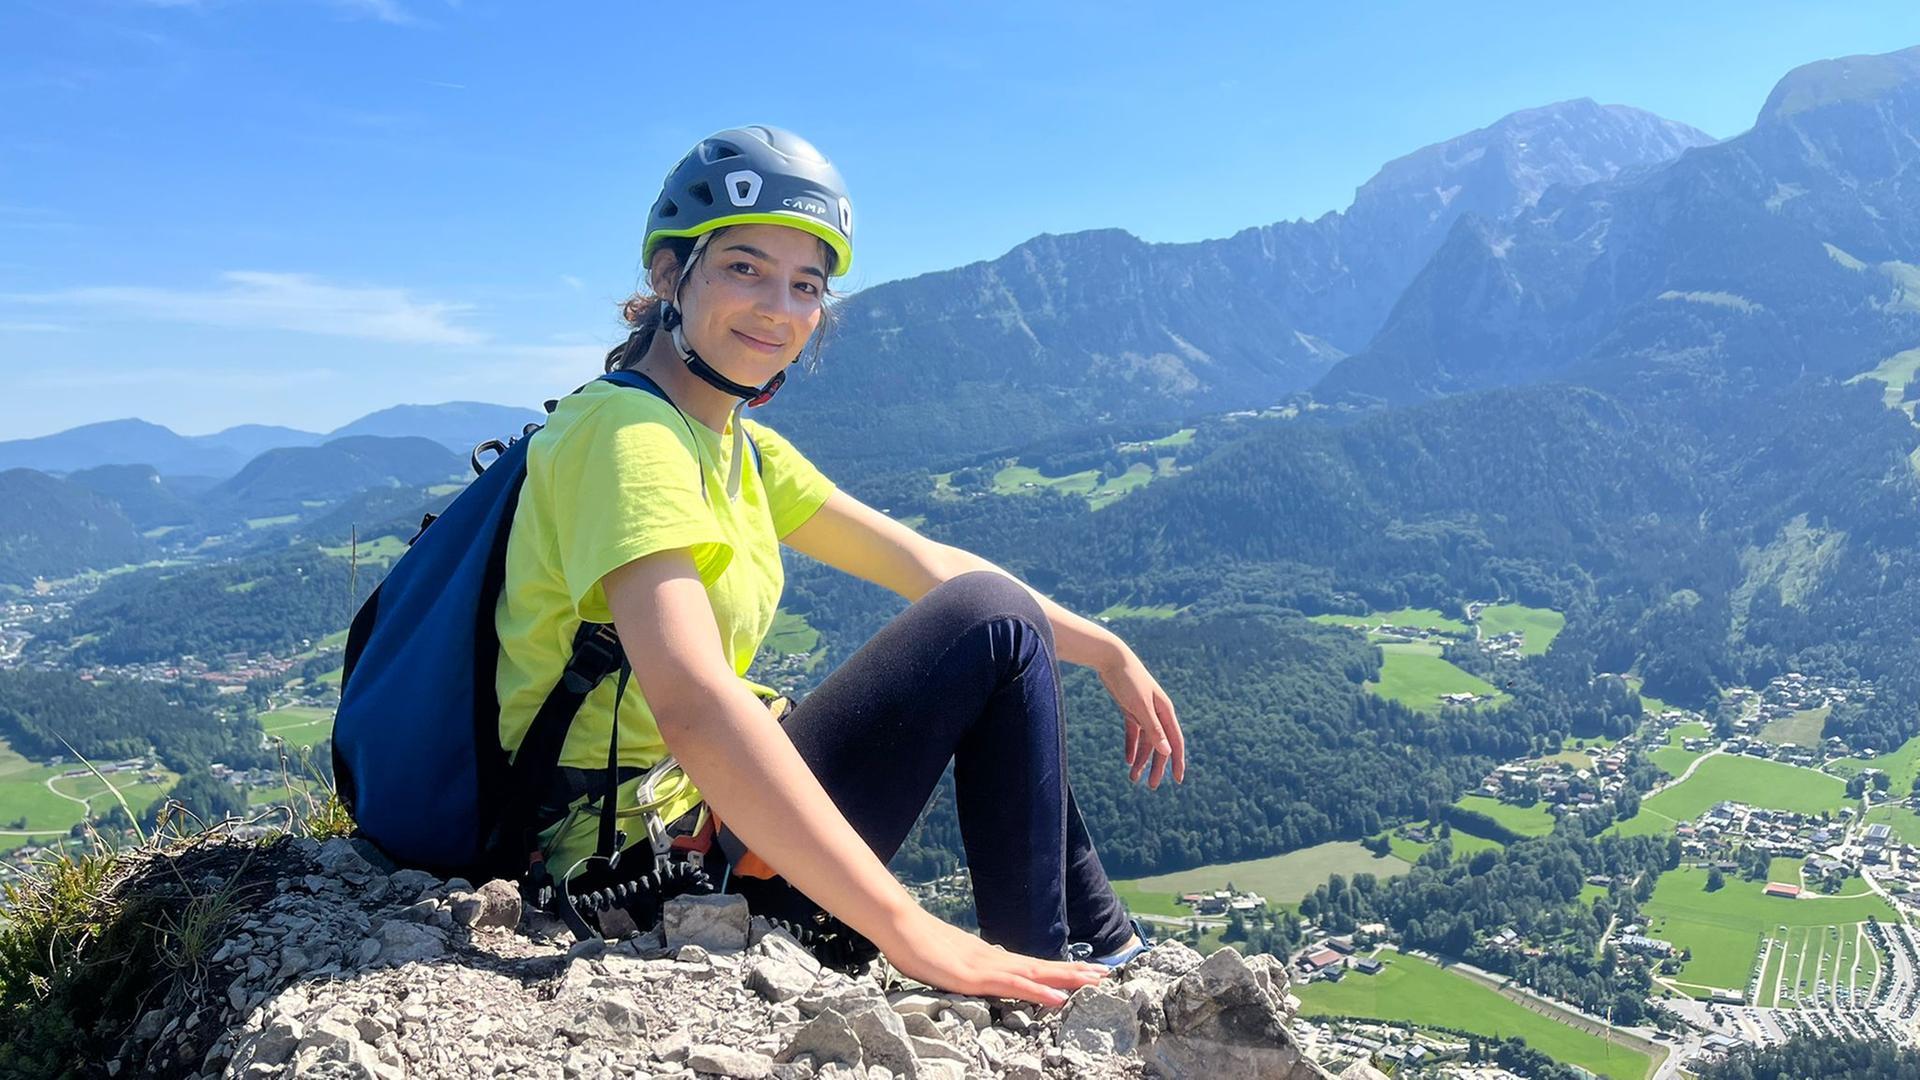 Eine Frau mit Helm und Rucksack sitzt auf einem Felsen, im Hintergrund ist ein Bergmassiv zu sehen.